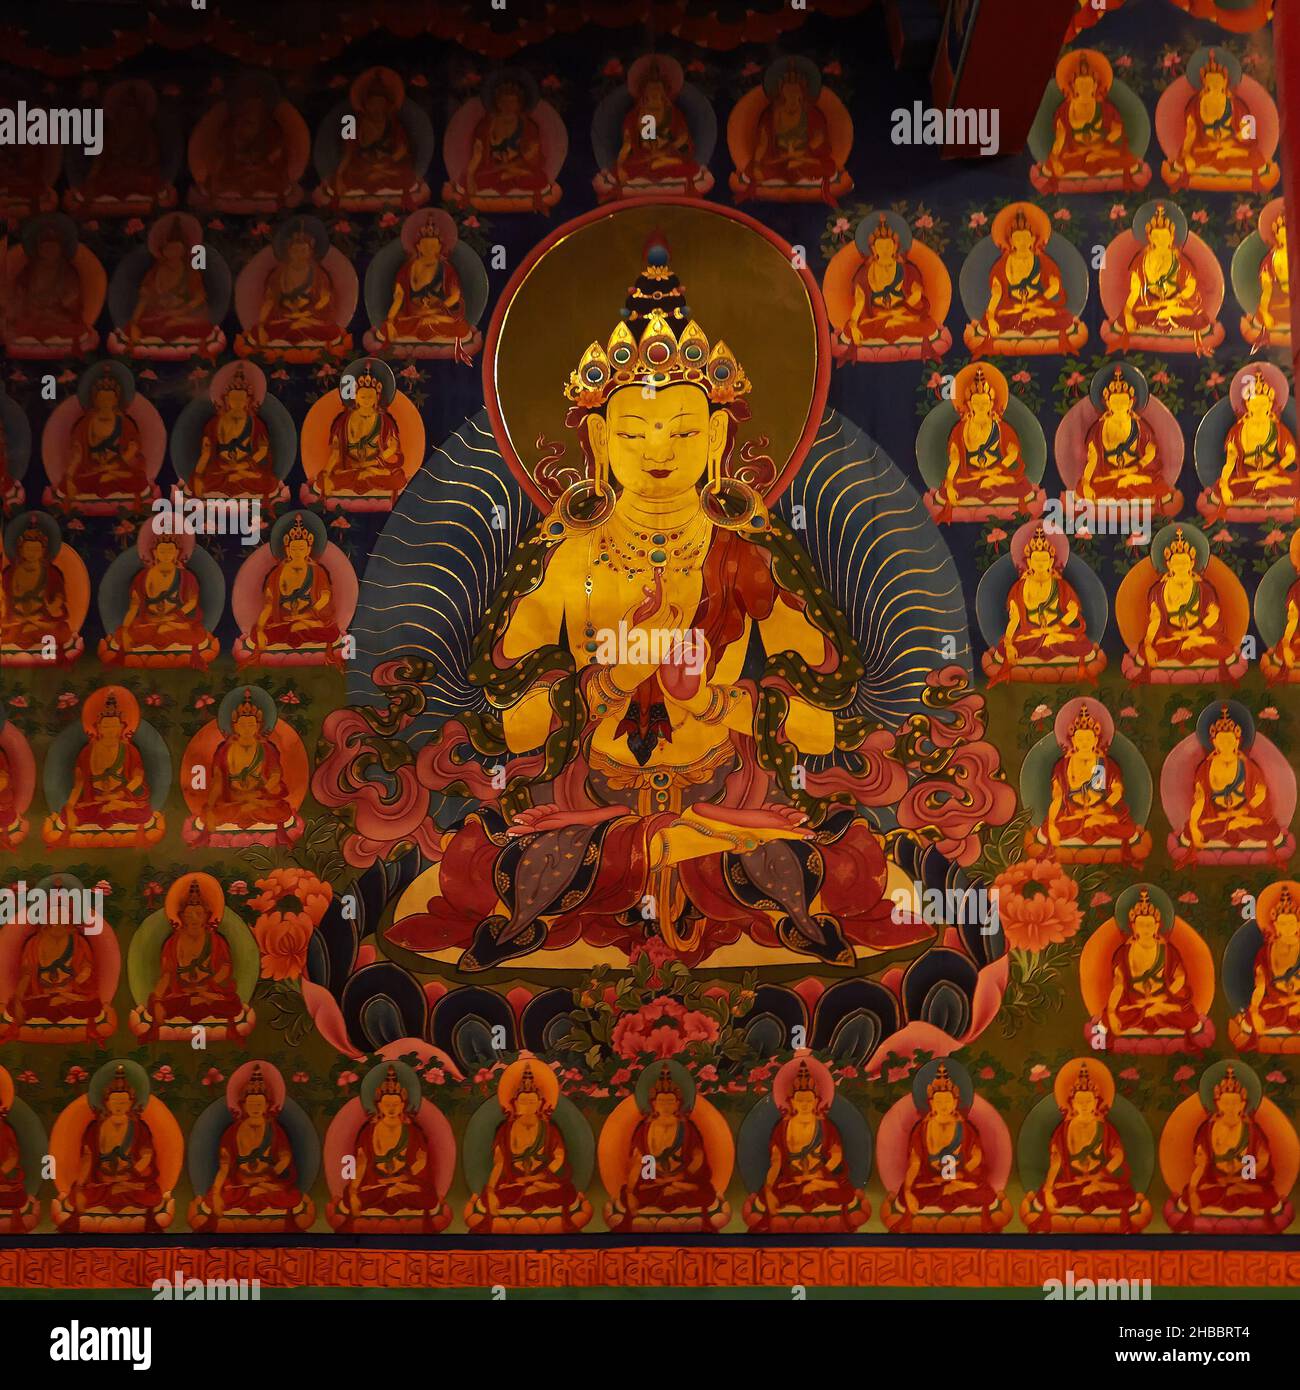 Wandmalereien zum tantrischen Buddhismus (tantrische Vajrayana-Lehren) im Hemis-Kloster. Tausend buddhas - Fragment Stockfoto